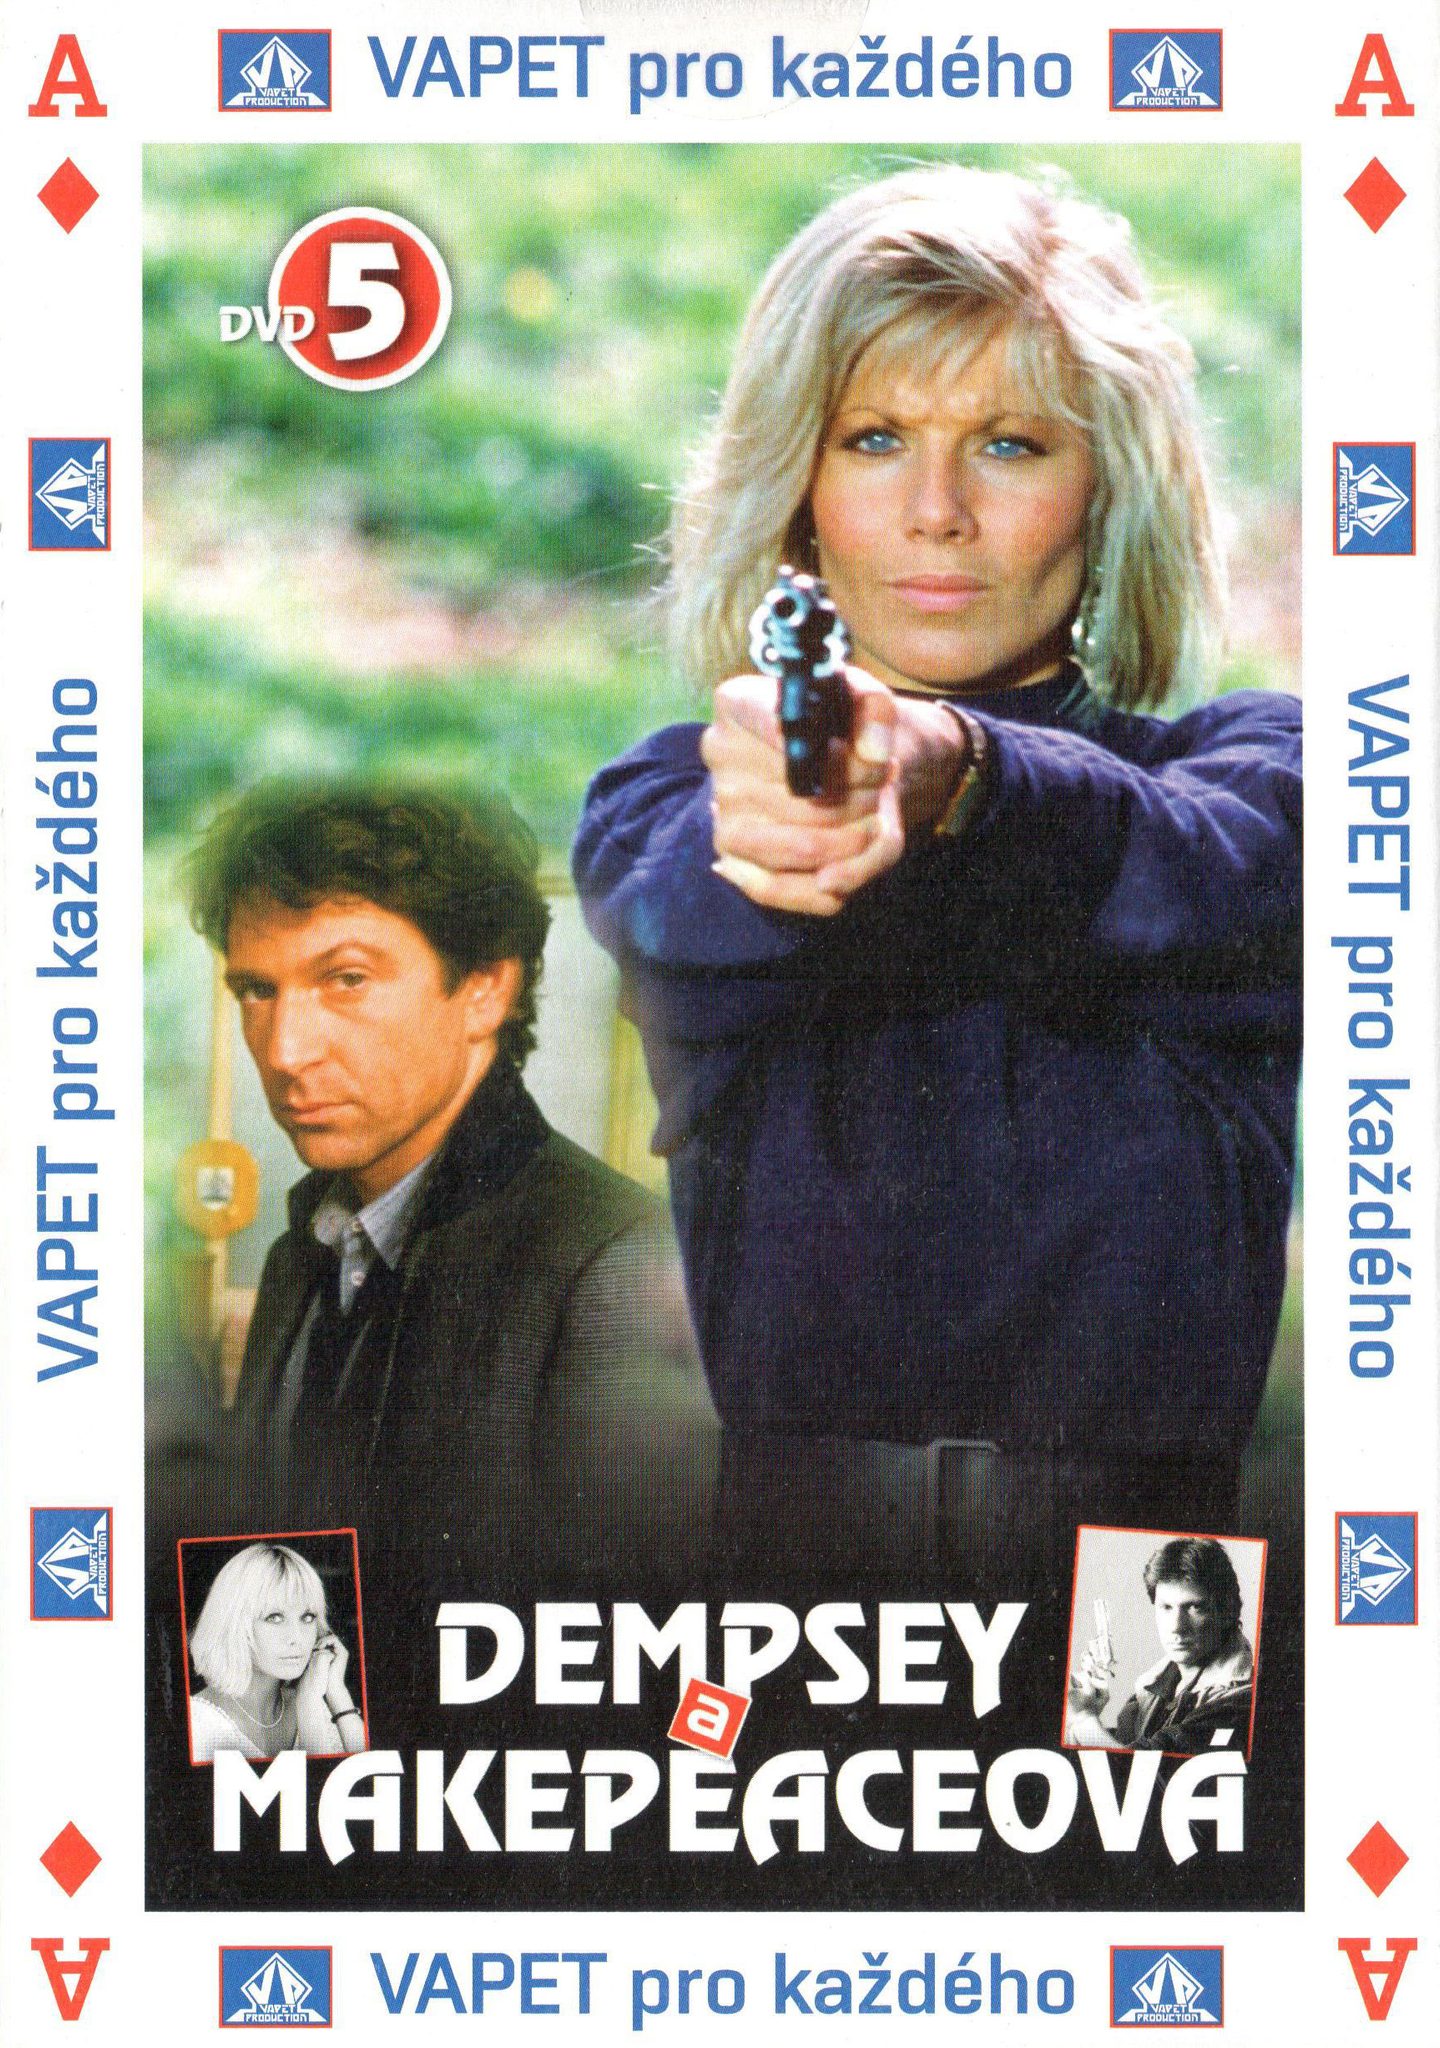 DVD Dempsey a Makepeaceov 5 - Kliknutm na obrzek zavete